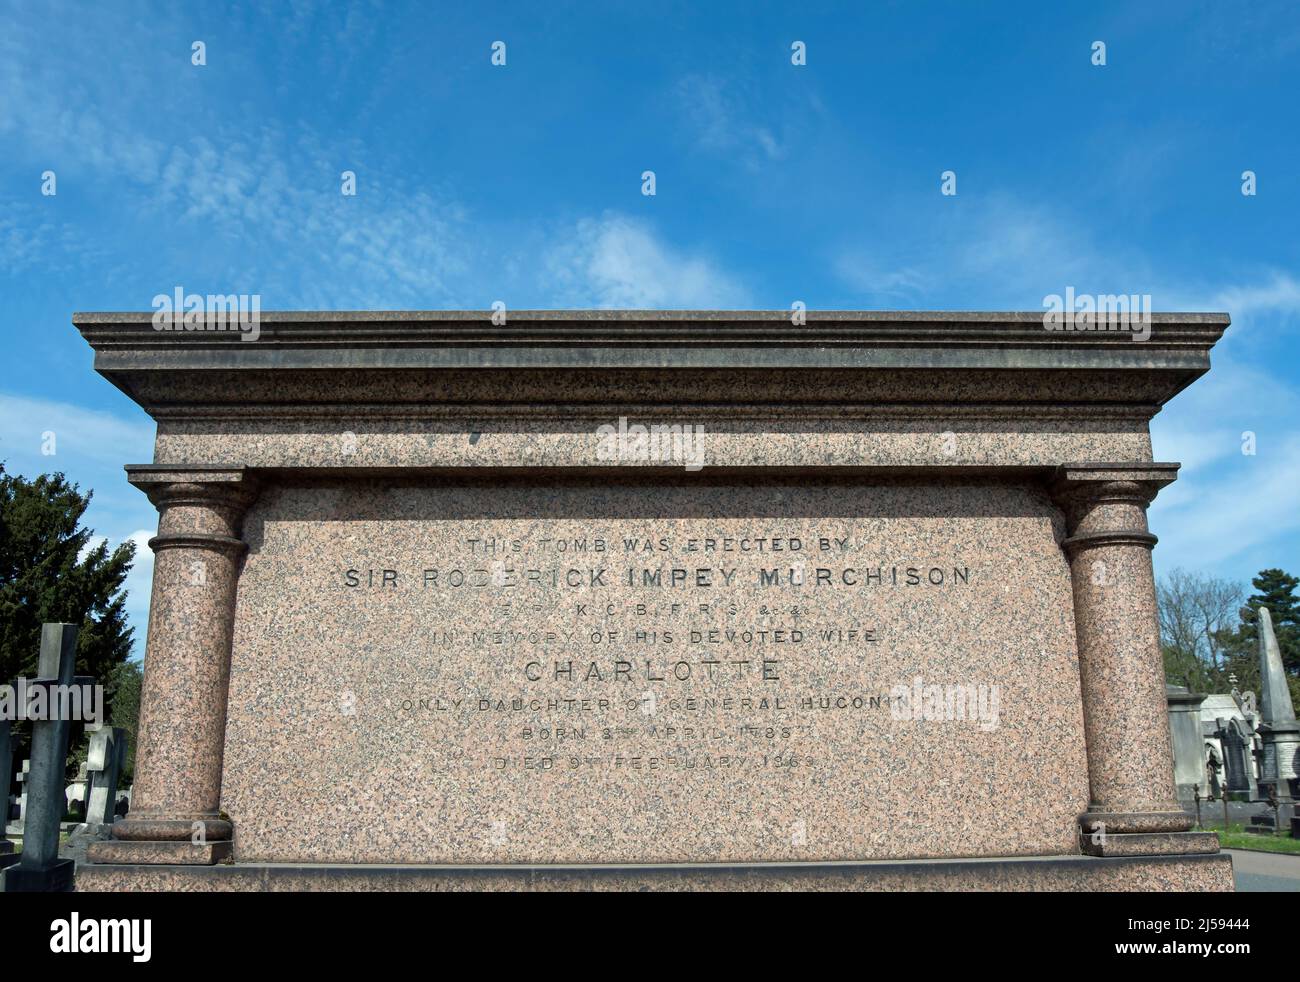 monumento che segna la tomba del geologo sig. roderick impey murchison, e sua moglie charlotte, al cimitero di brompton, londra, inghilterra Foto Stock